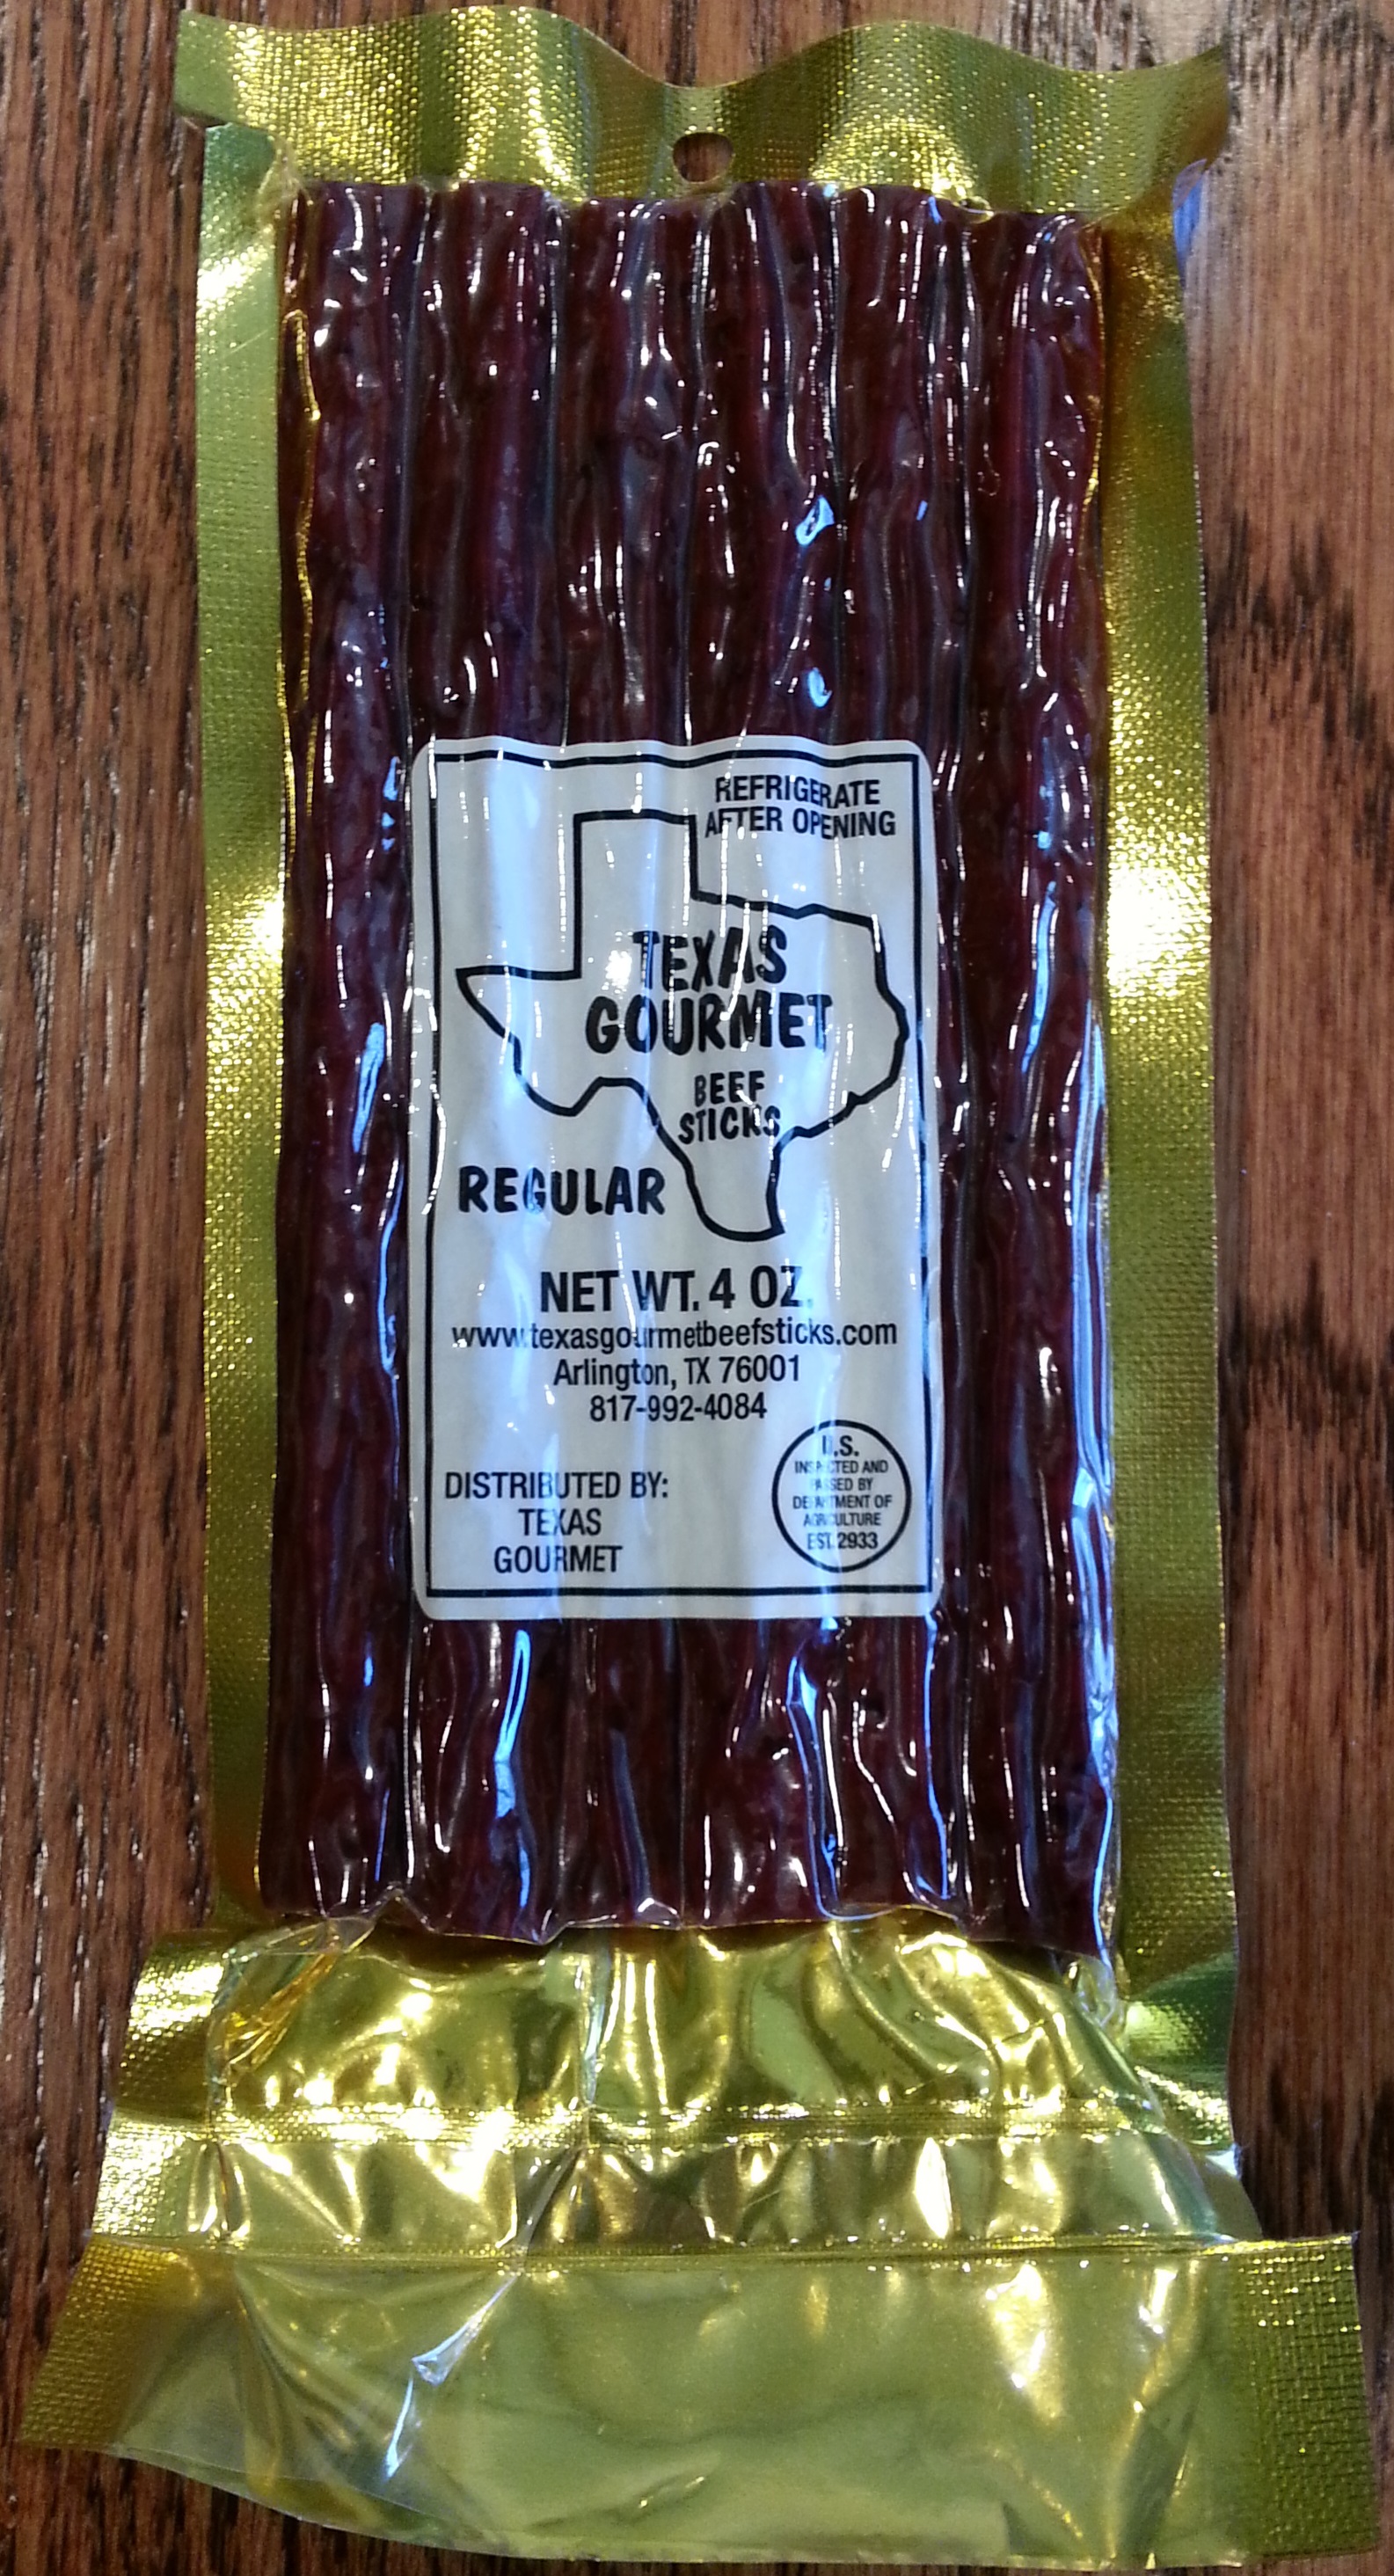 Texas Gourmet Regular Beef Sticks